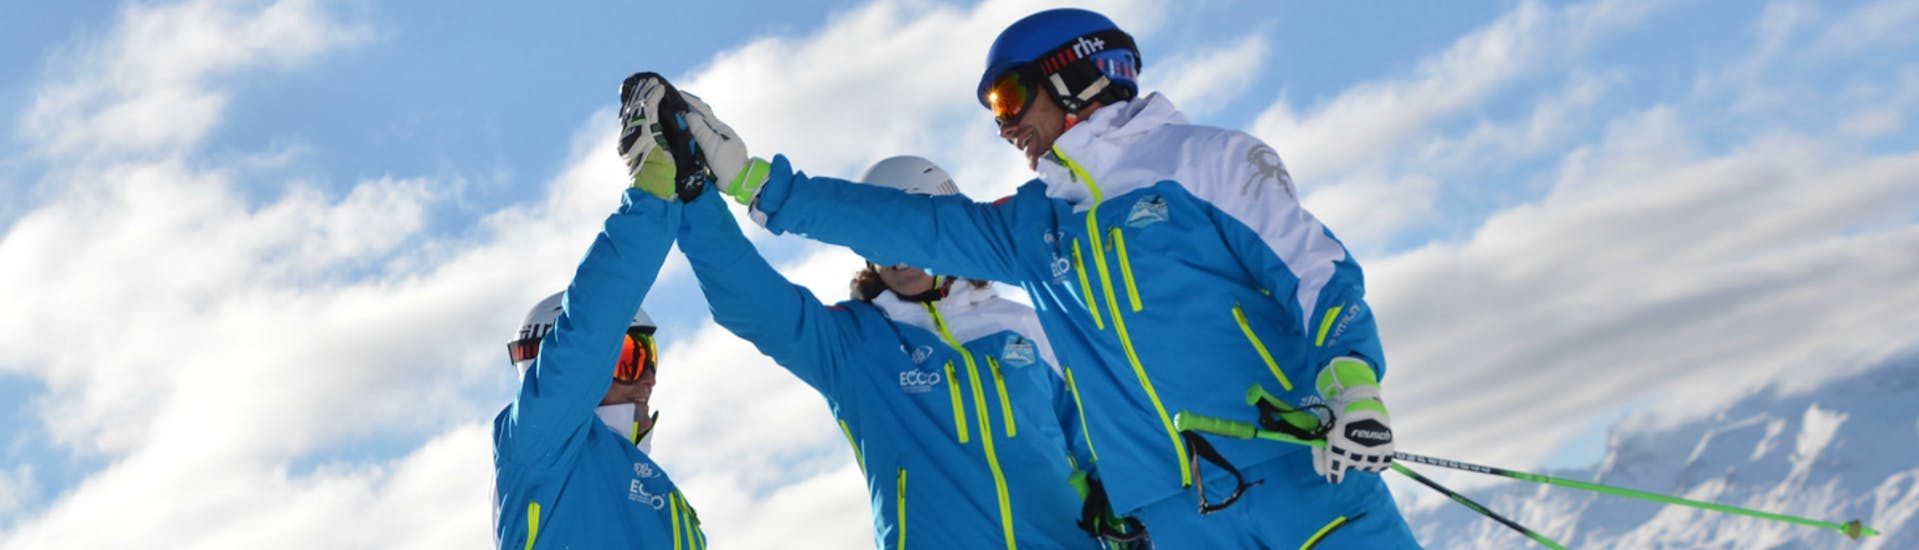 Drie skileraren van skischool Silvaplana Top Snowsports geven elkaar een high-five tijdens de kinderskilessen voor alle niveaus.